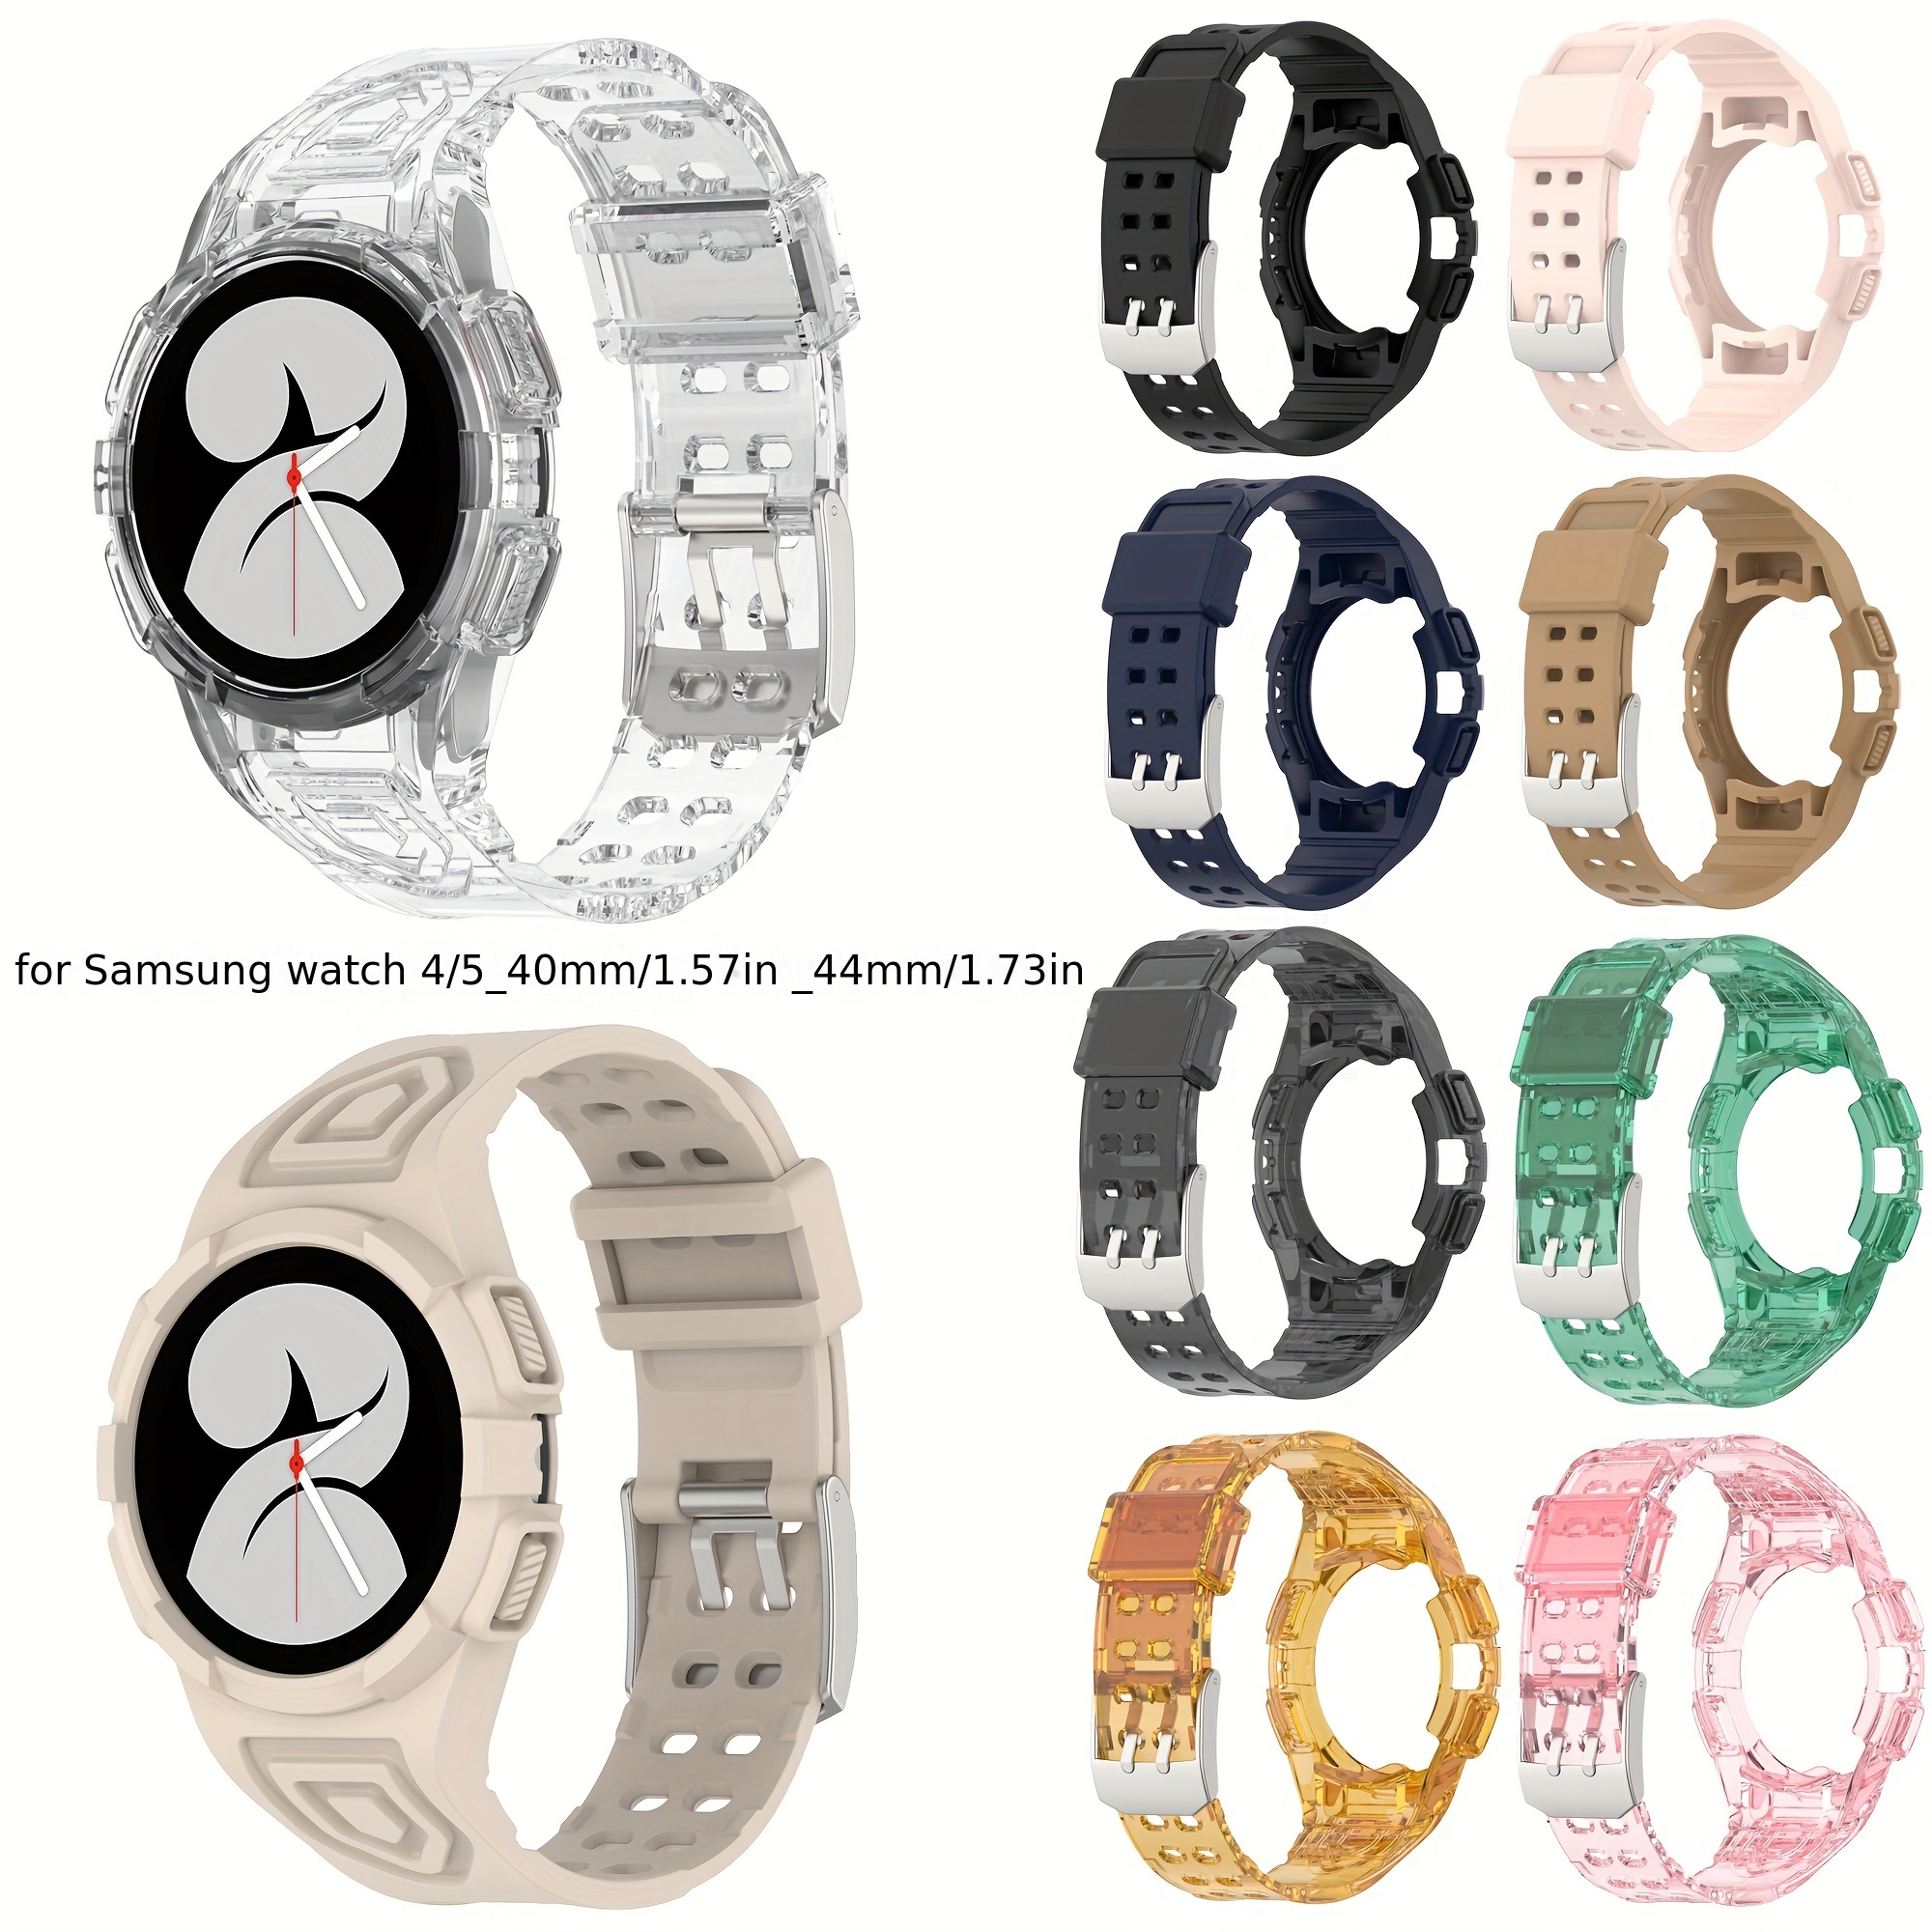  Funda compatible con Amazfit GTR 4 Watch Funda colorida a  prueba de golpes de silicona protectora funda protectora para Amazfit GTR 4  Smartwatch (6 colores) : Celulares y Accesorios